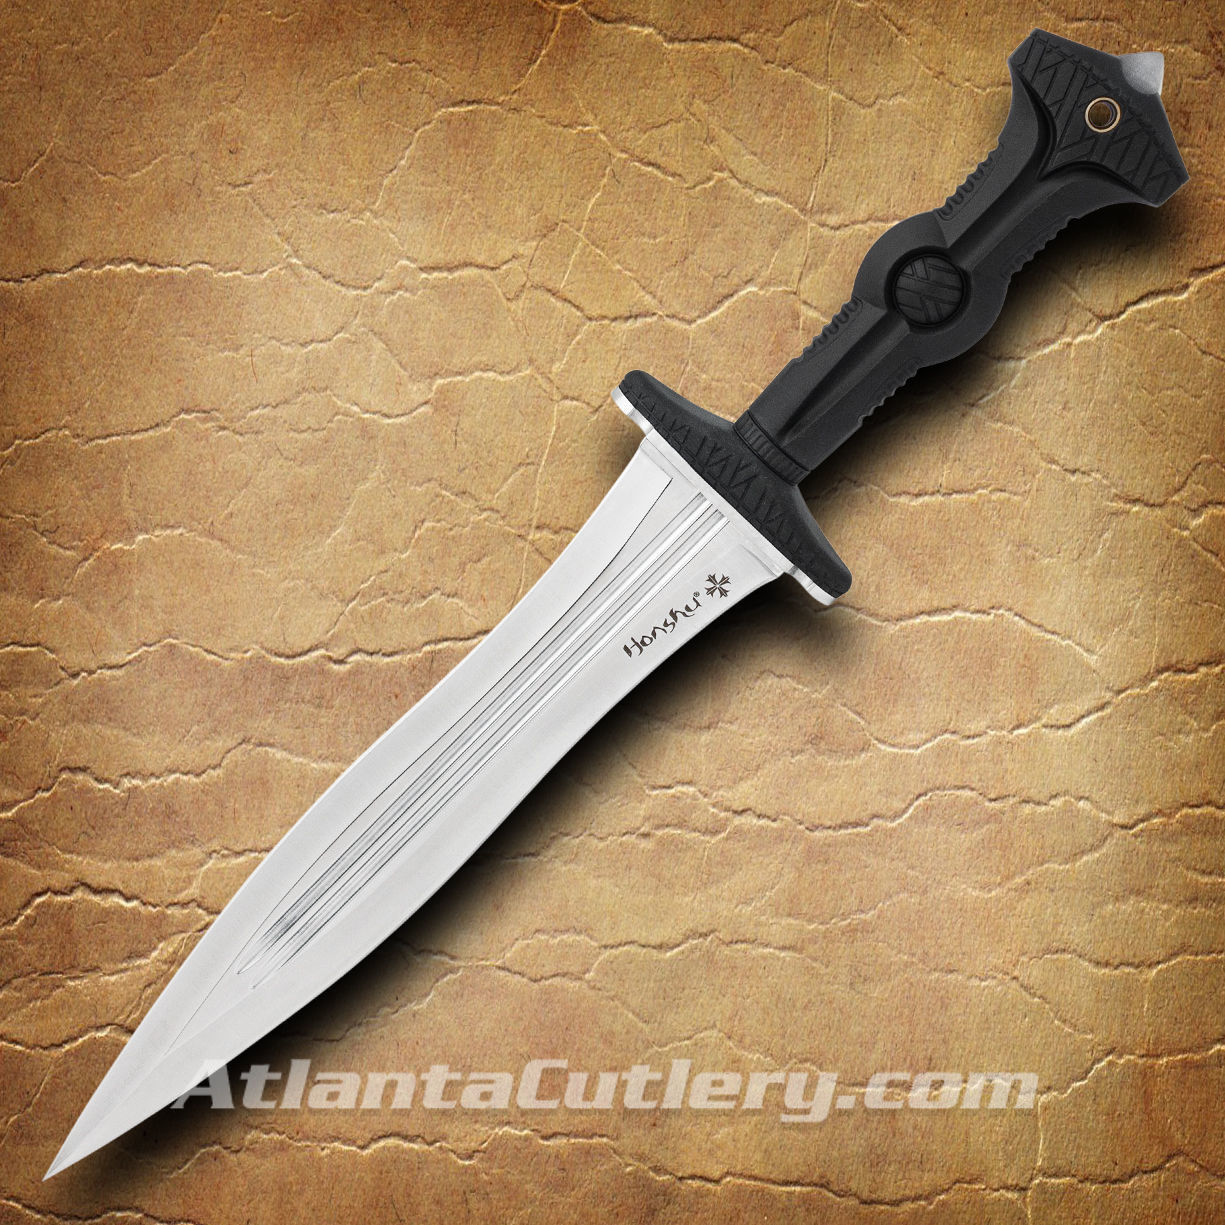 Honshu Legionary Dagger sharp double-edged blade has double fullers, a sharp point, molded TPR handle, skull crusher pommel